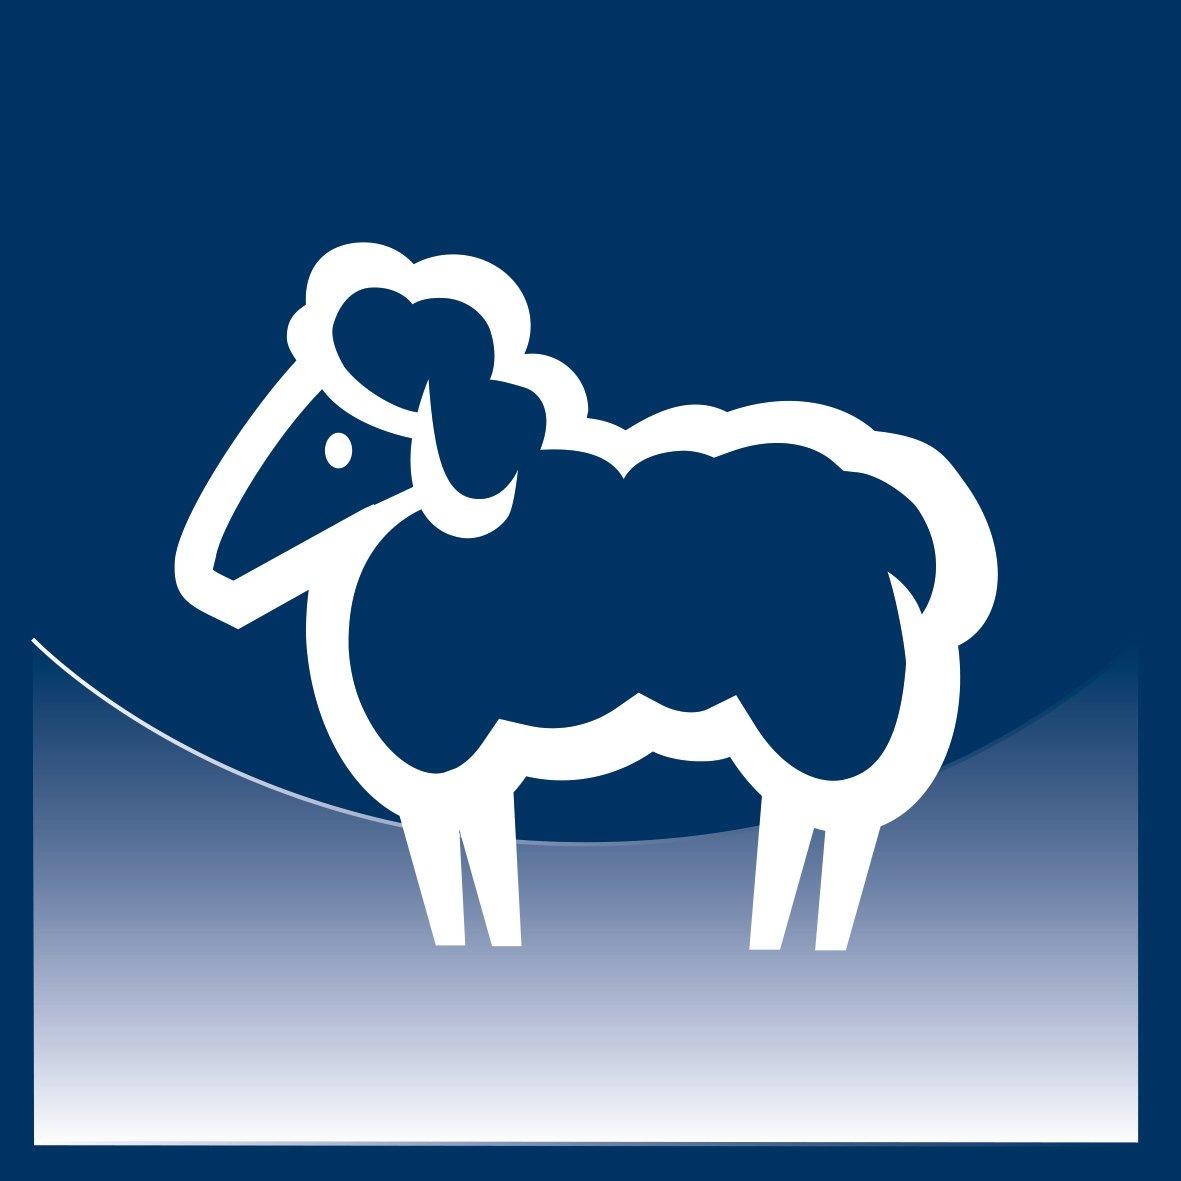 billerbeck Naturhaarbettdecke »Organic Wool Light«, extraleicht, Füllung 100% Schafschurwolle aus kontrolliert biologischer Tierhaltung (kbT), Bezug 100% Baumwolle, Soft-Batist, aus kontrolliert biologischem Anbau (kbA), (1 St.)